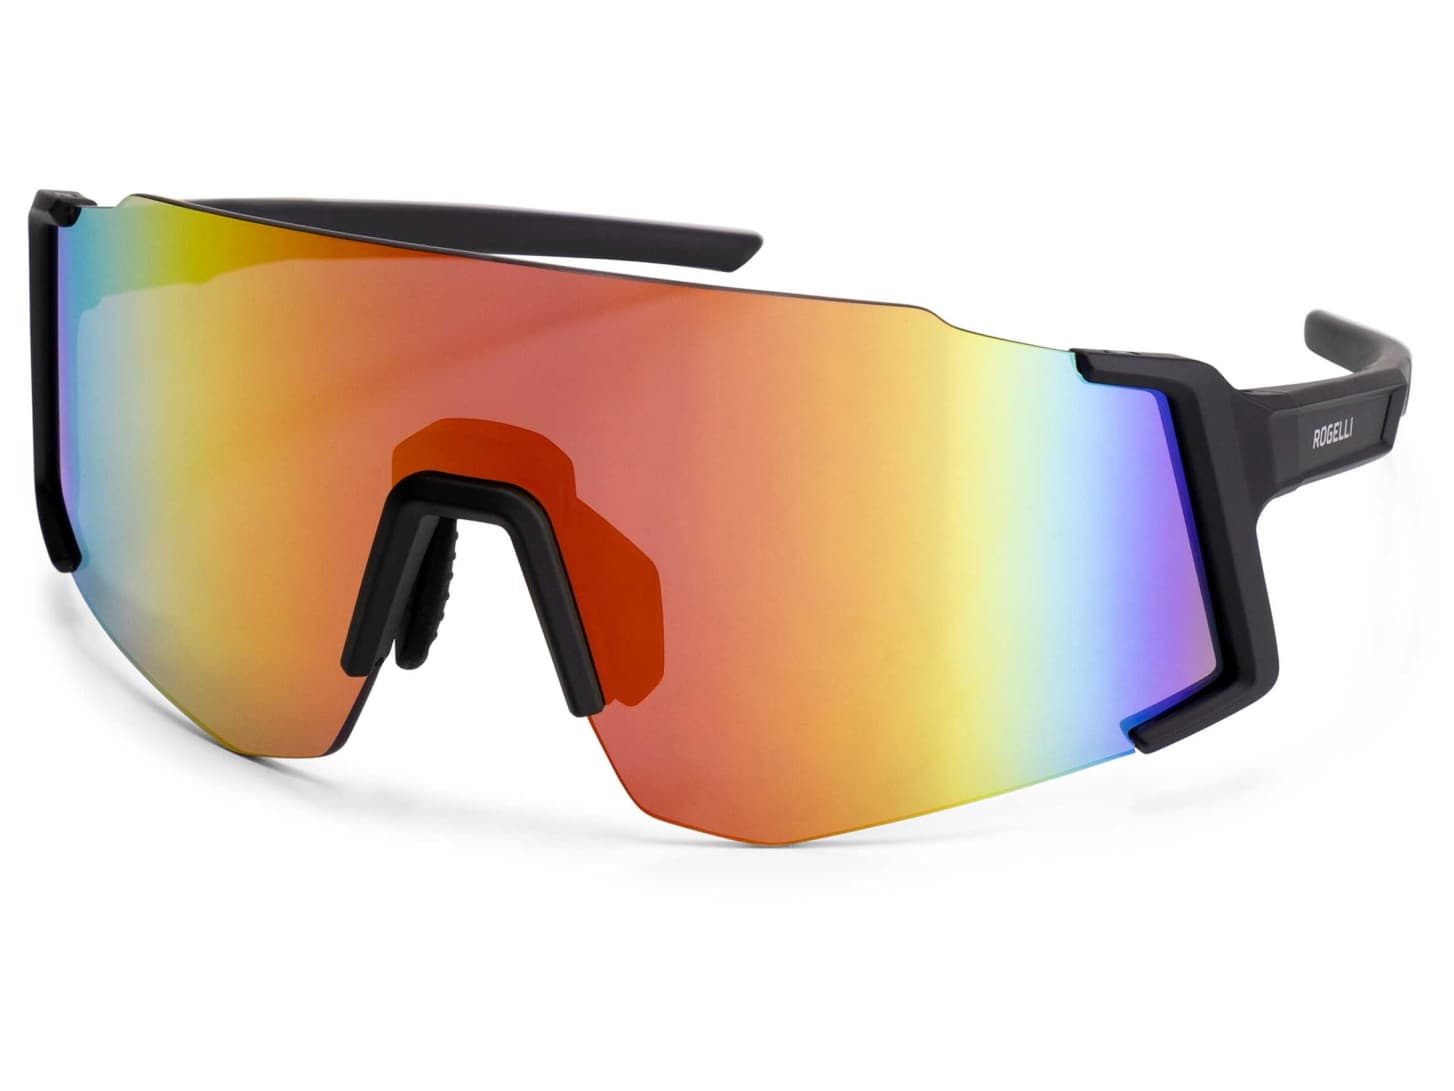 Tmavé sluneční sportovní brýle Rogelli SABRE + neoprénové pouzdro, černo-červené